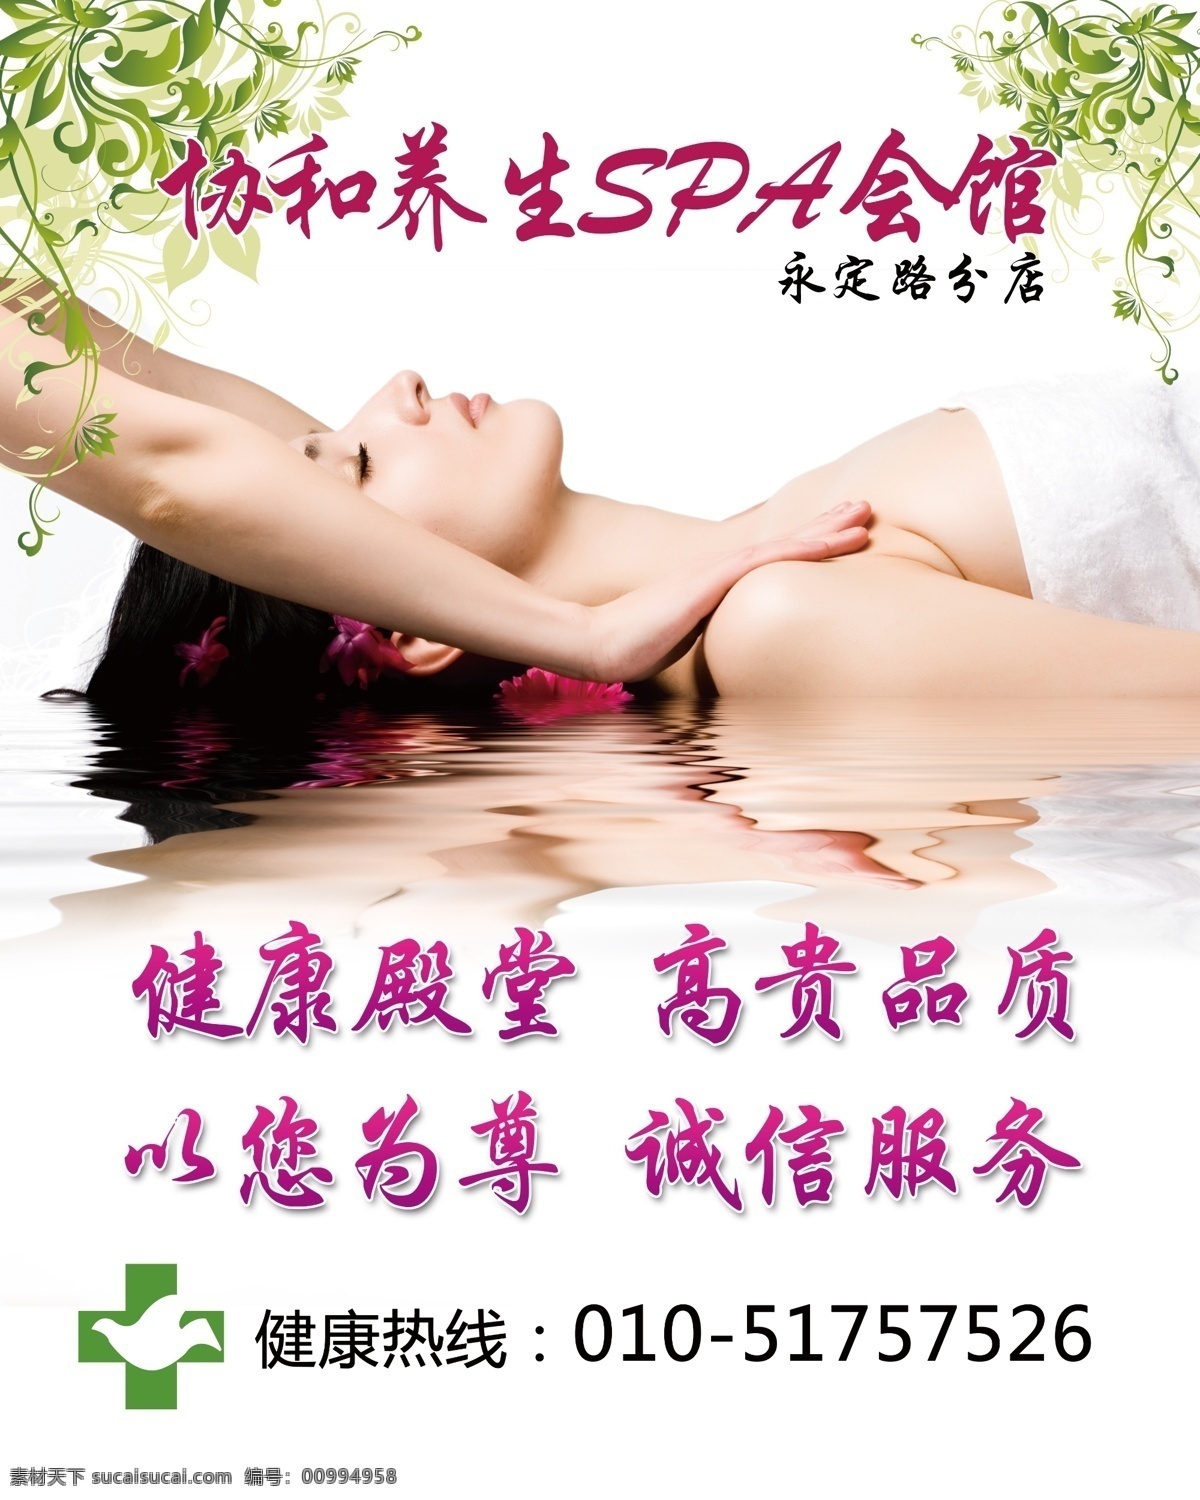 spa 按摩 诚信海报 广告设计模板 健康服务 藤蔓 养生 养生spa 安全舒适 叶子 水 躺着女人 源文件 其他海报设计